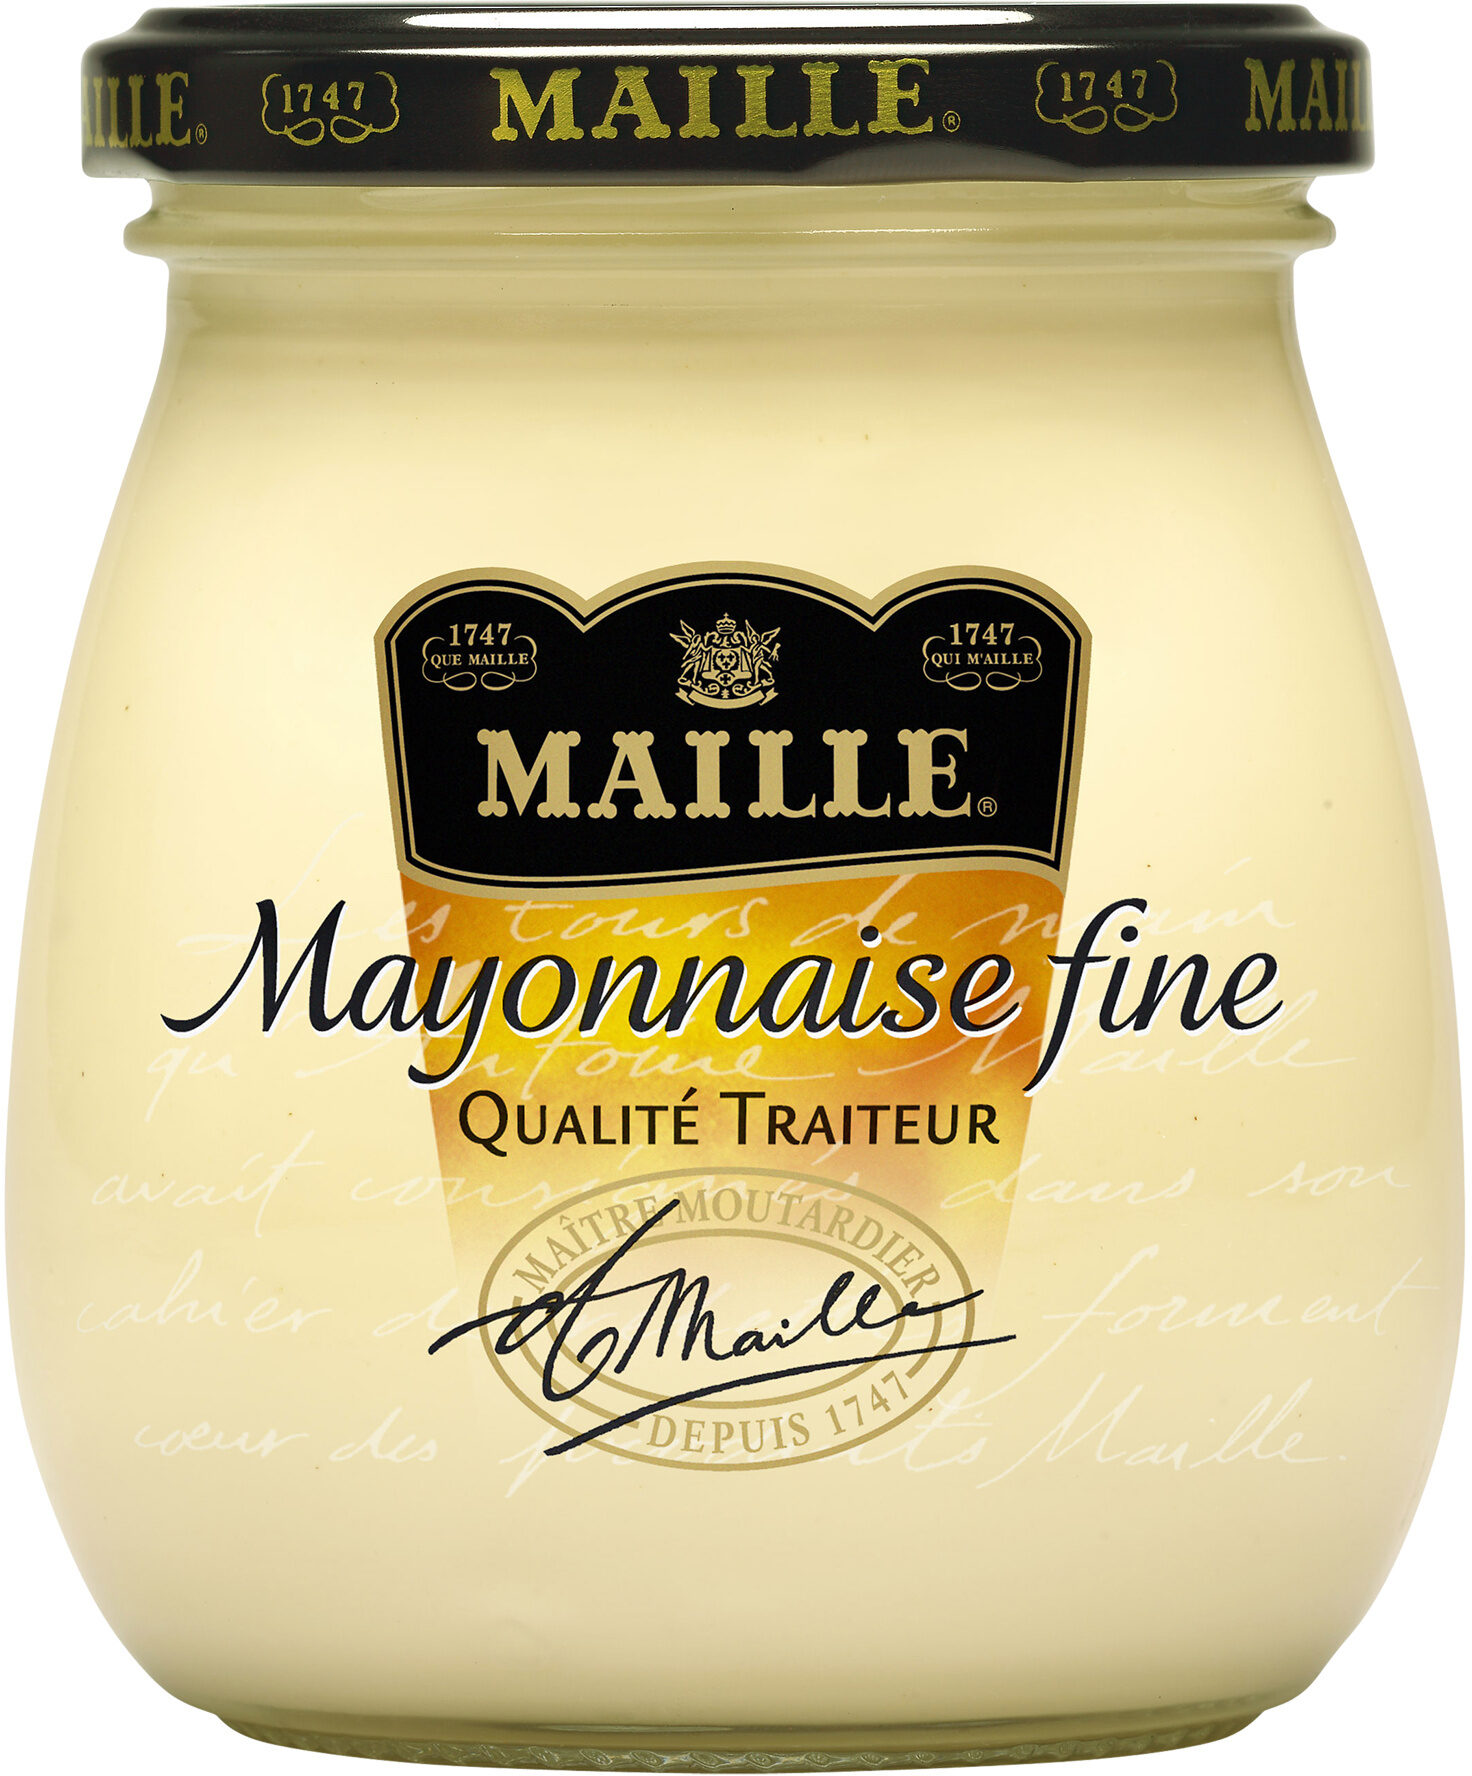 Maille Mayonnaise Fine qualité traiteur au rayon frais 300g - Product - fr